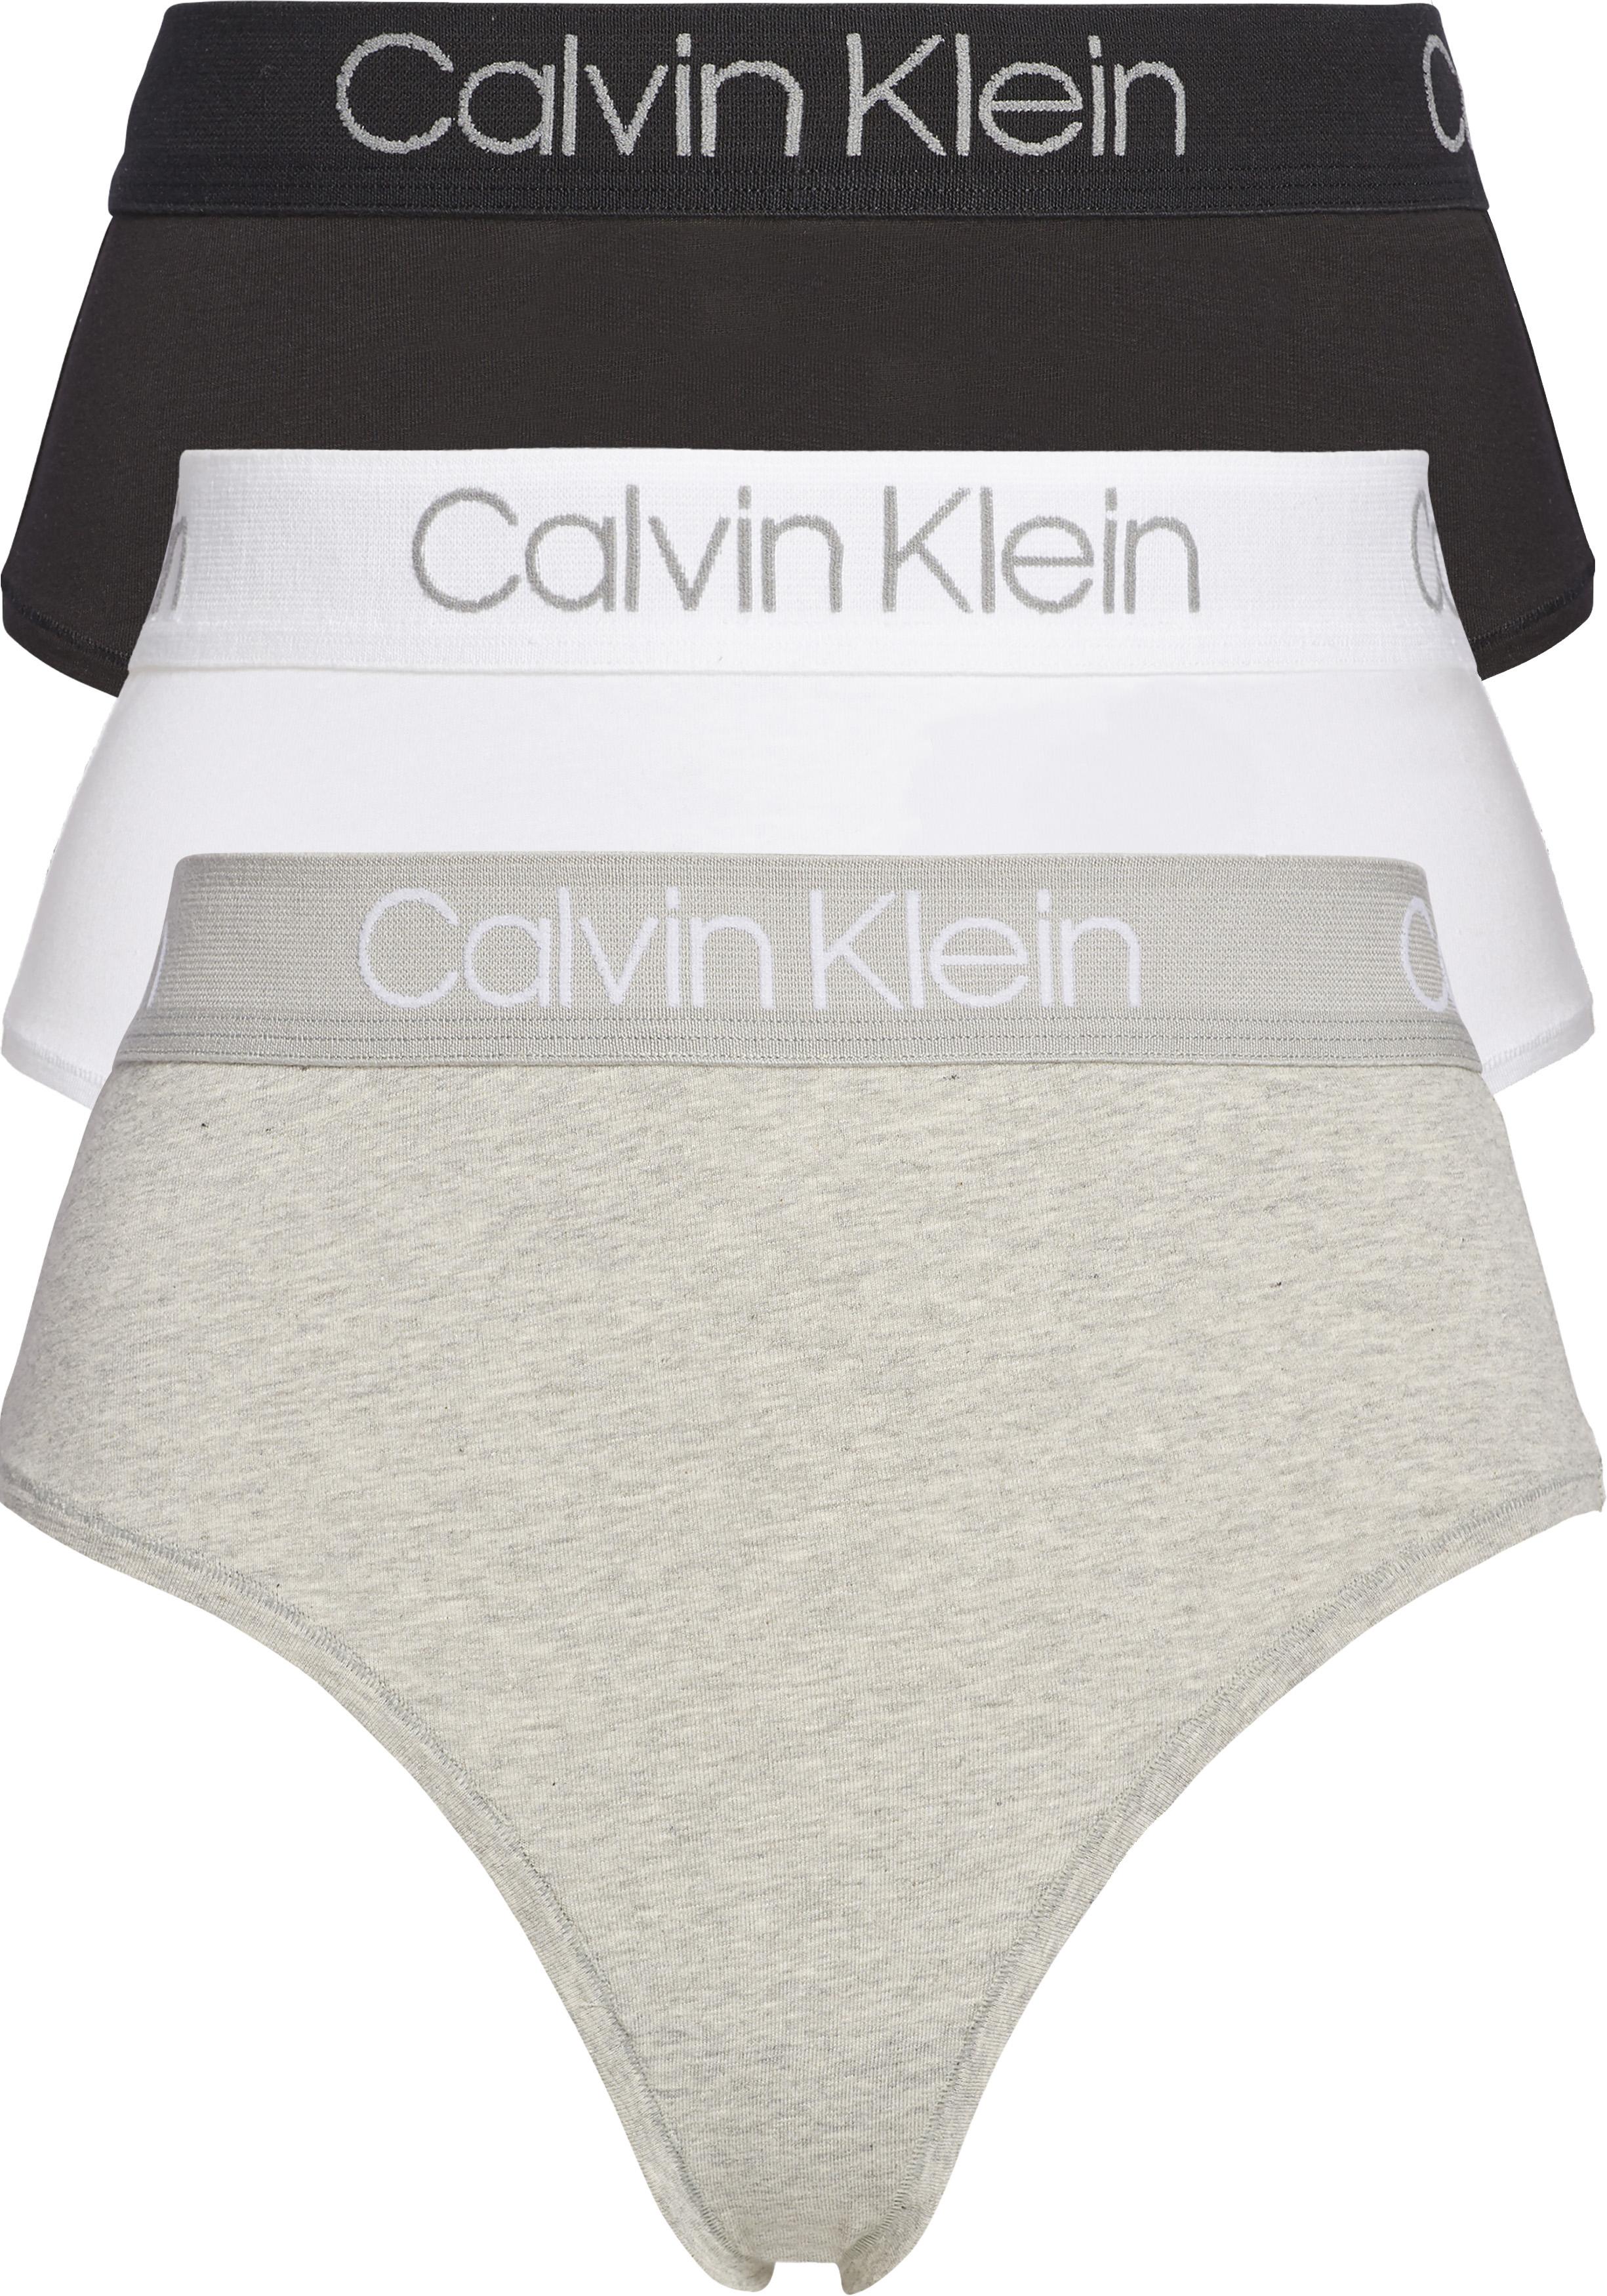 Calvin Klein hoge taille strings (3-pack), zwart, wit en grijs - Shop de nieuwste voorjaarsmode